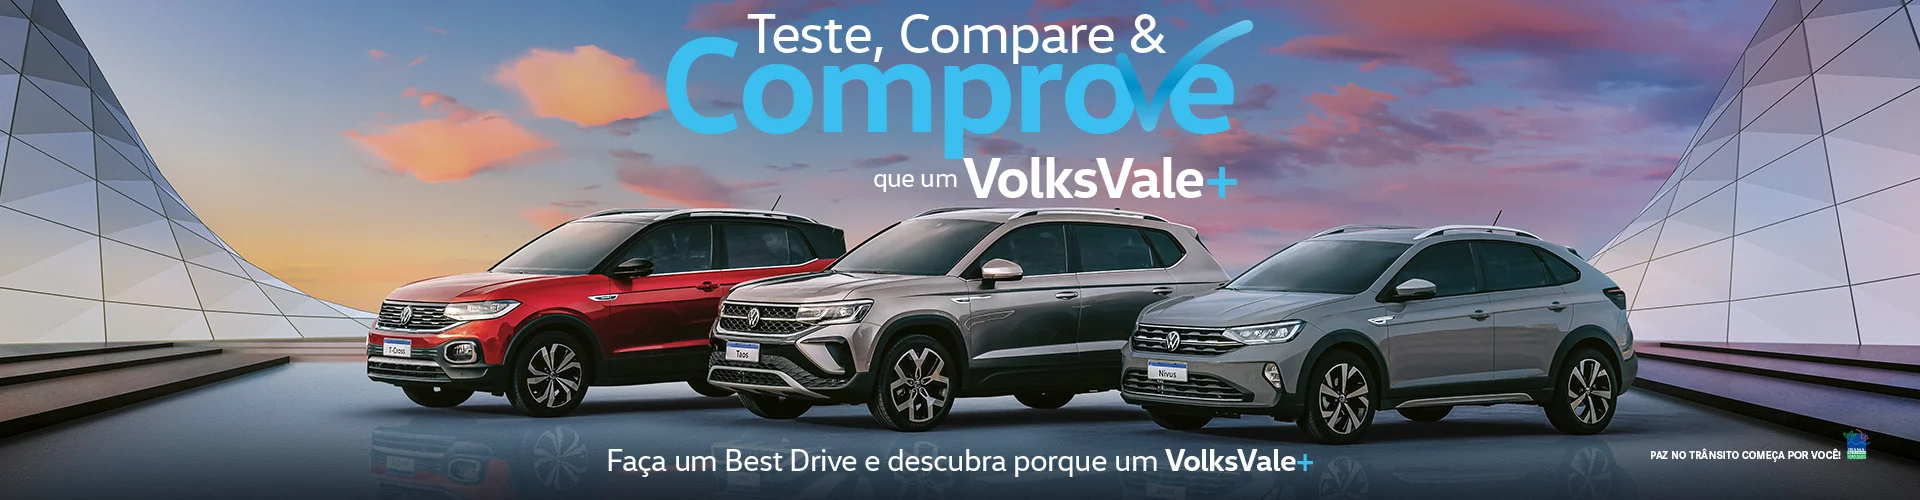 Teste, compare e comprove que um Volks Vale+